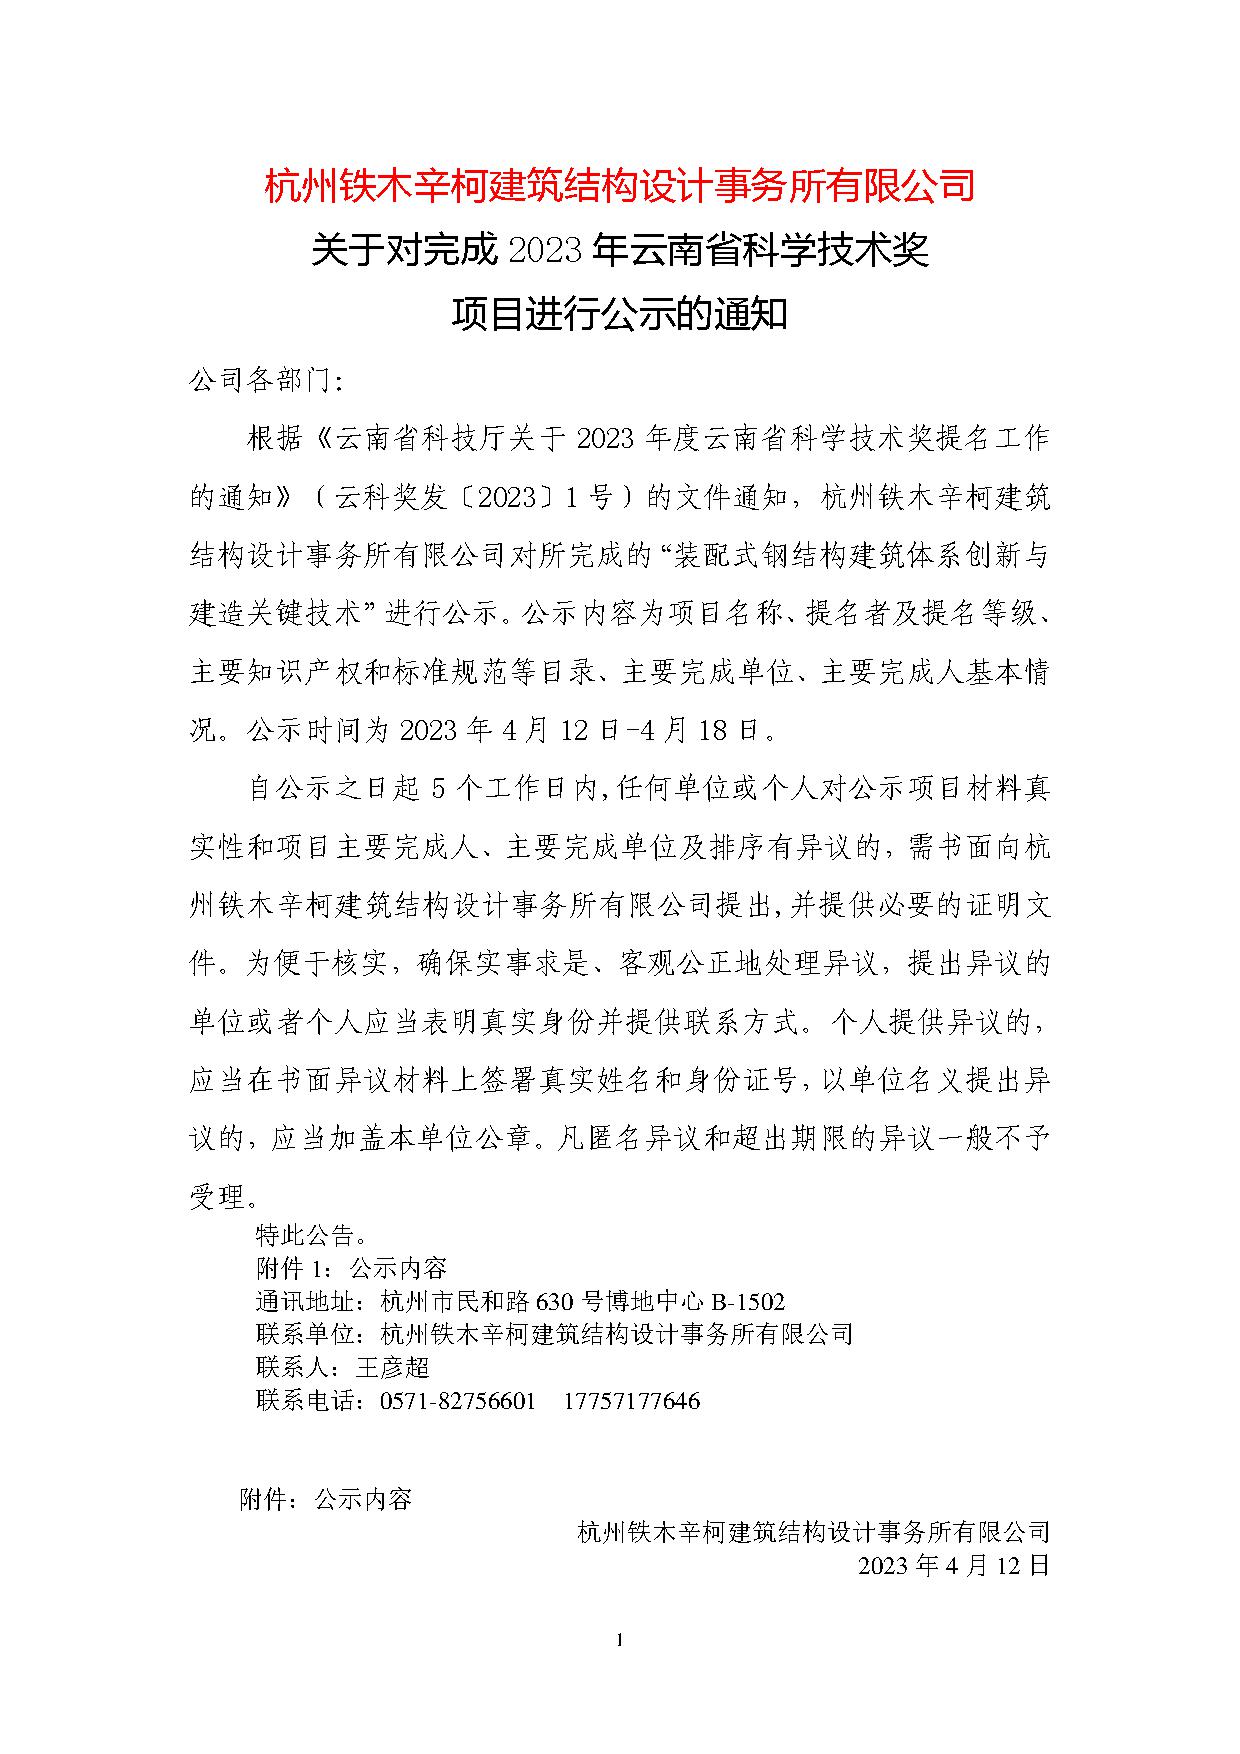 杭州铁木辛柯建筑结构设计事务所有限公司关于对完成2023年云南省科学技术奖项目进行公示的通知